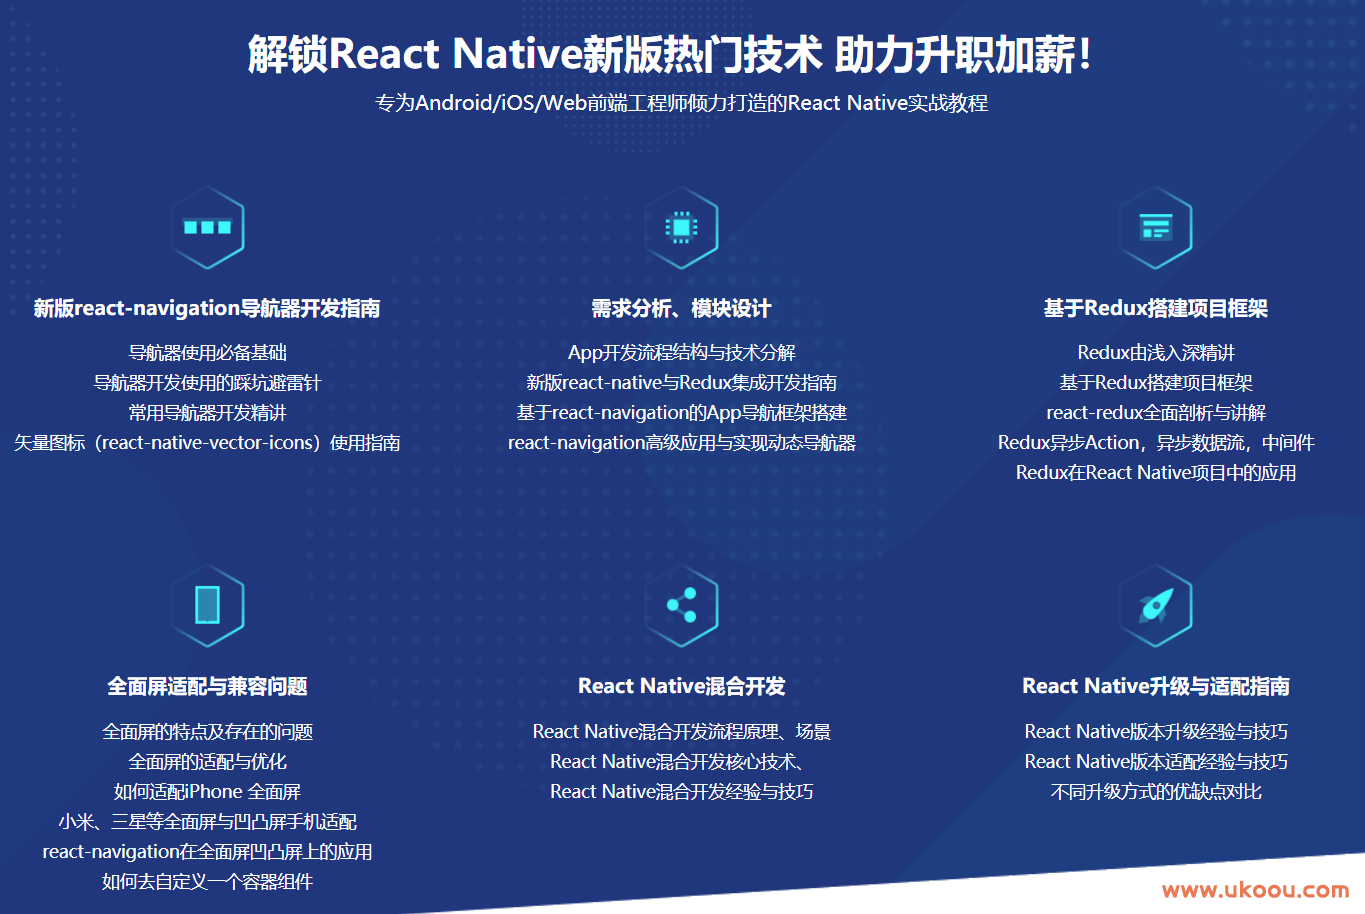 React Native从入门到实战 打造高质量上线App.png